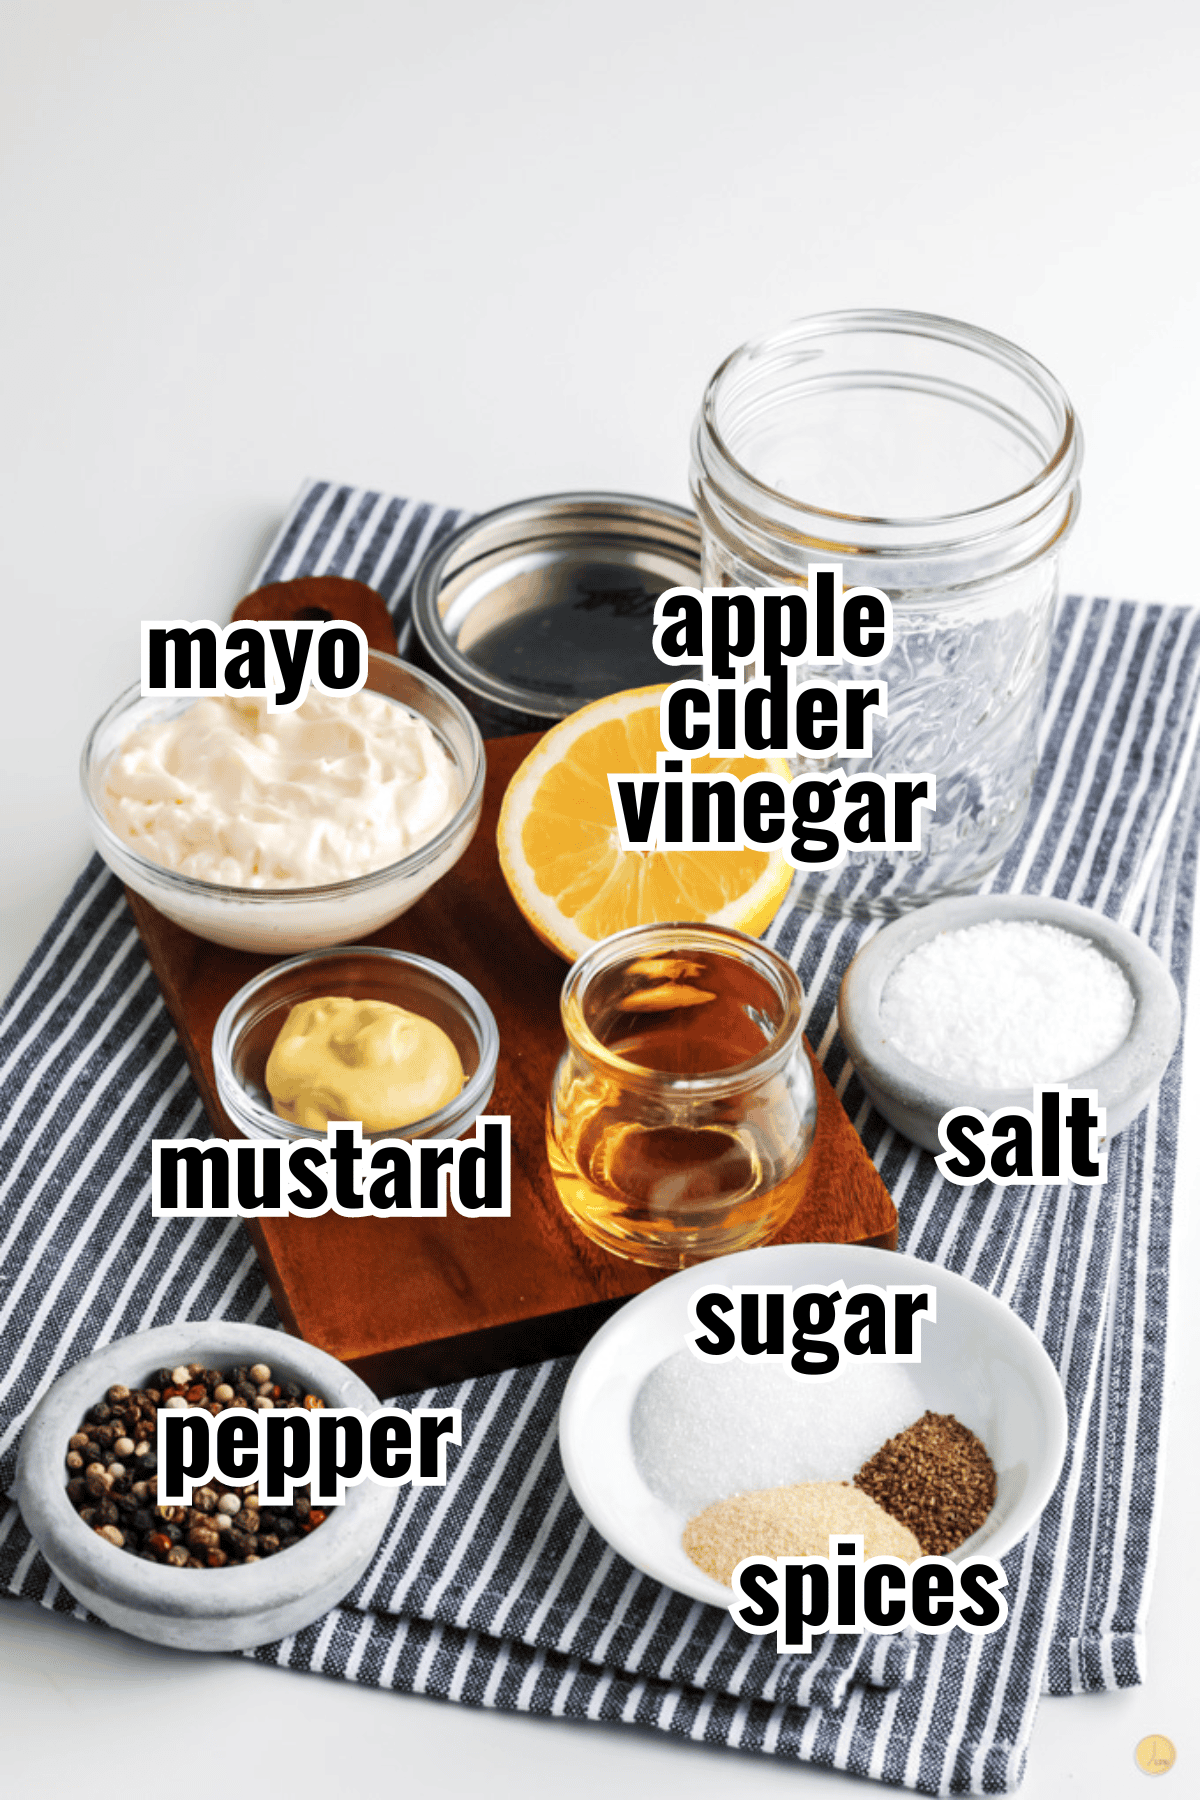 ingredients in jars